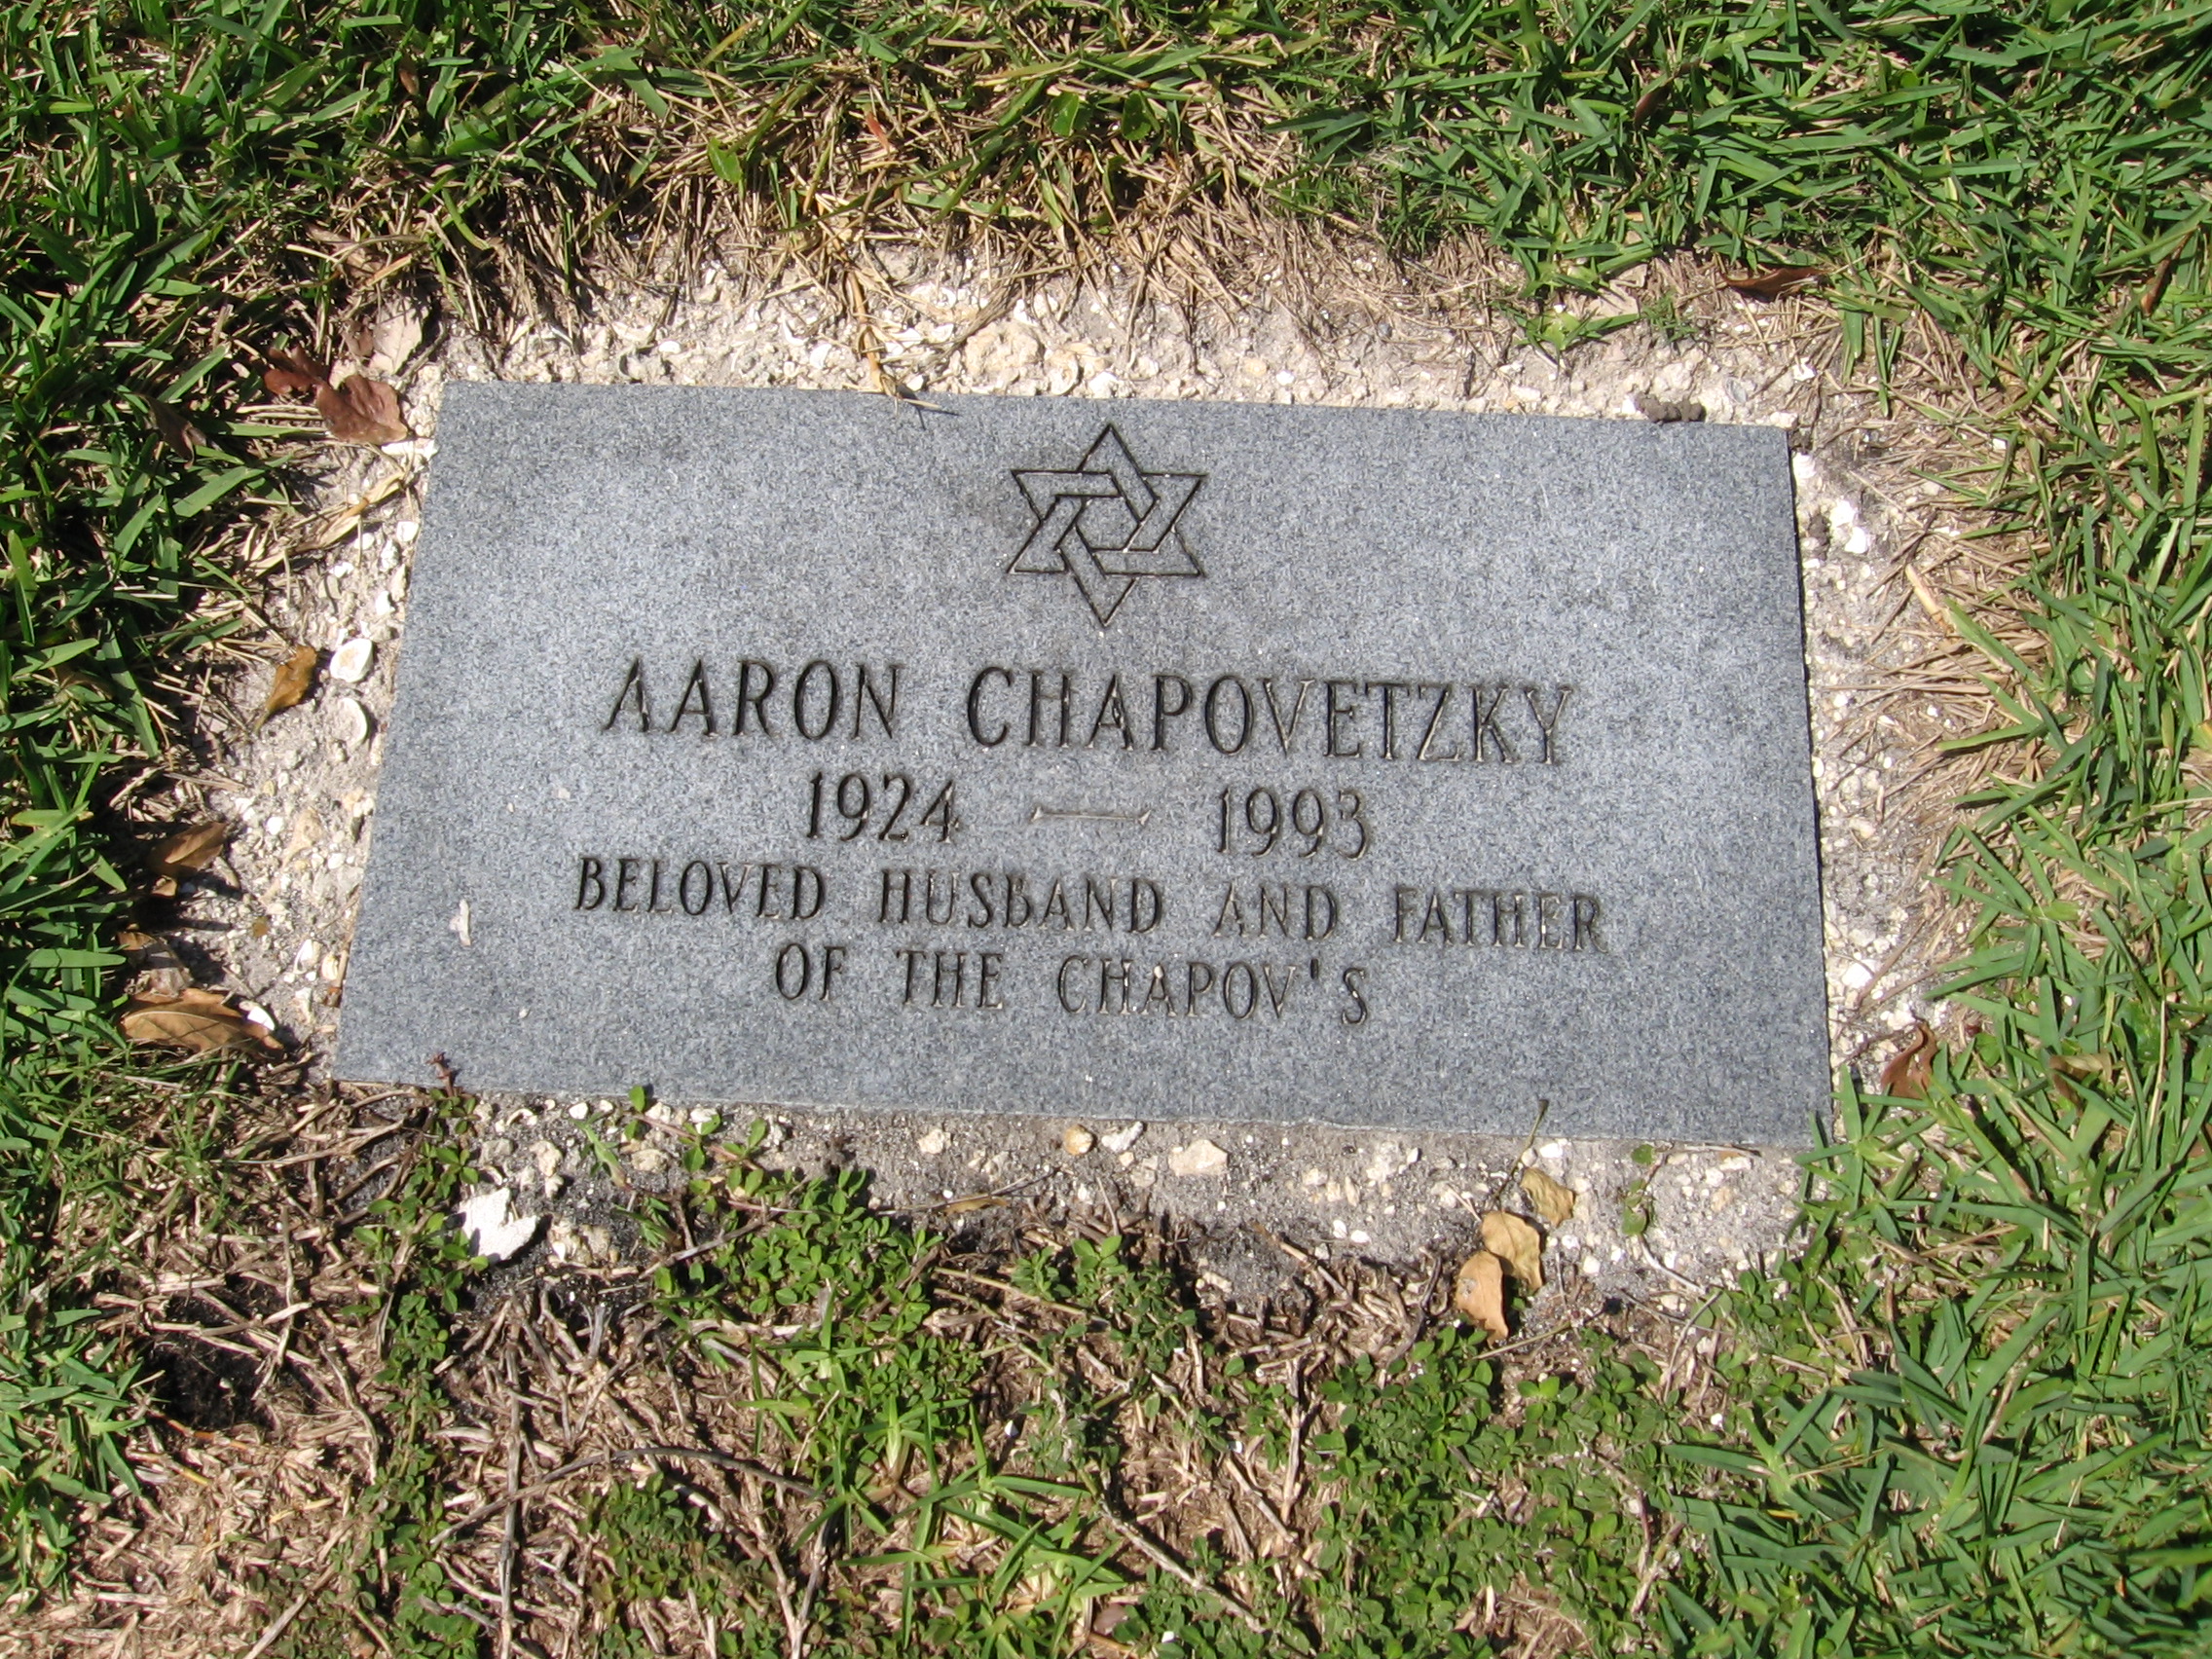 Aaron Chapovetzky